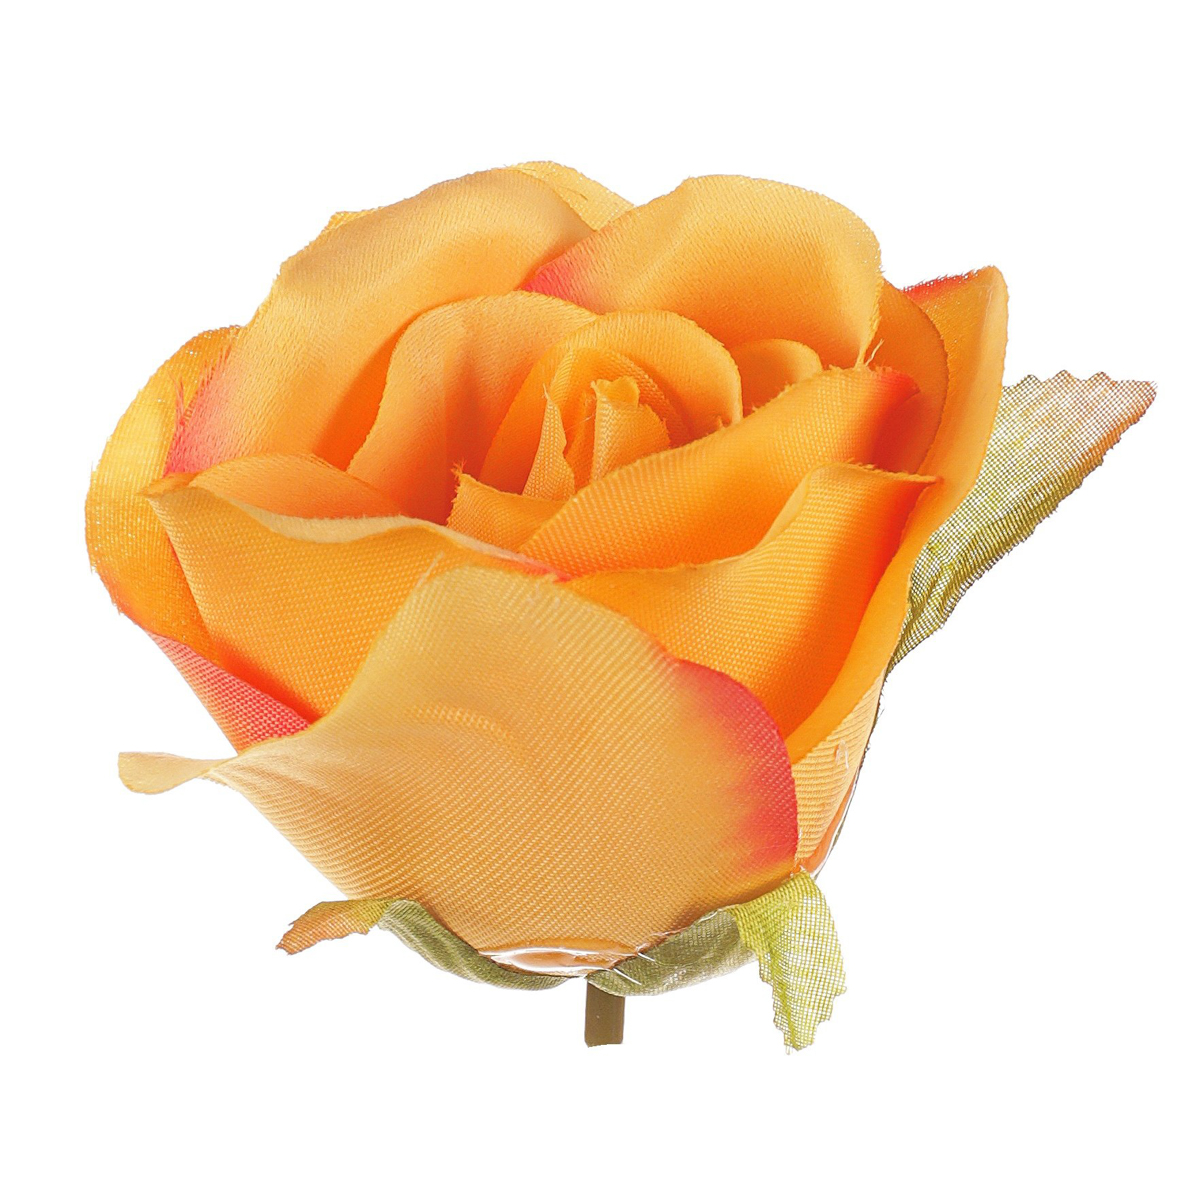 Růže, barva oranžová. Květina umělá vazbová. Cena za balení 12 kusů.